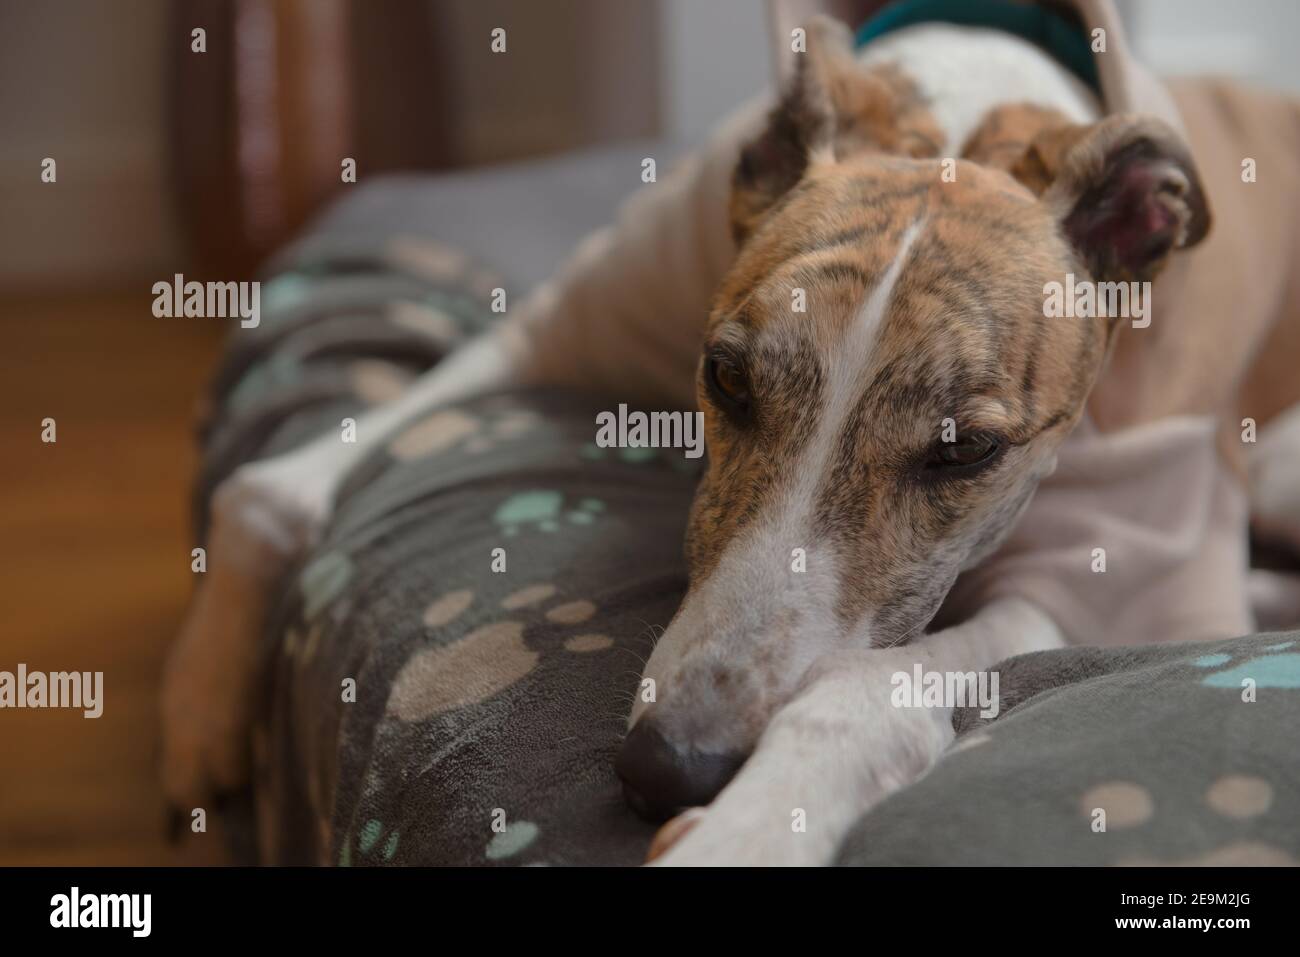 L'animal de compagnie adopté greyhound s'installe sur une couverture souple pour chiens décorée de gravures bleues. Gros plan d'un chien face couchée avec des pattes devant Banque D'Images